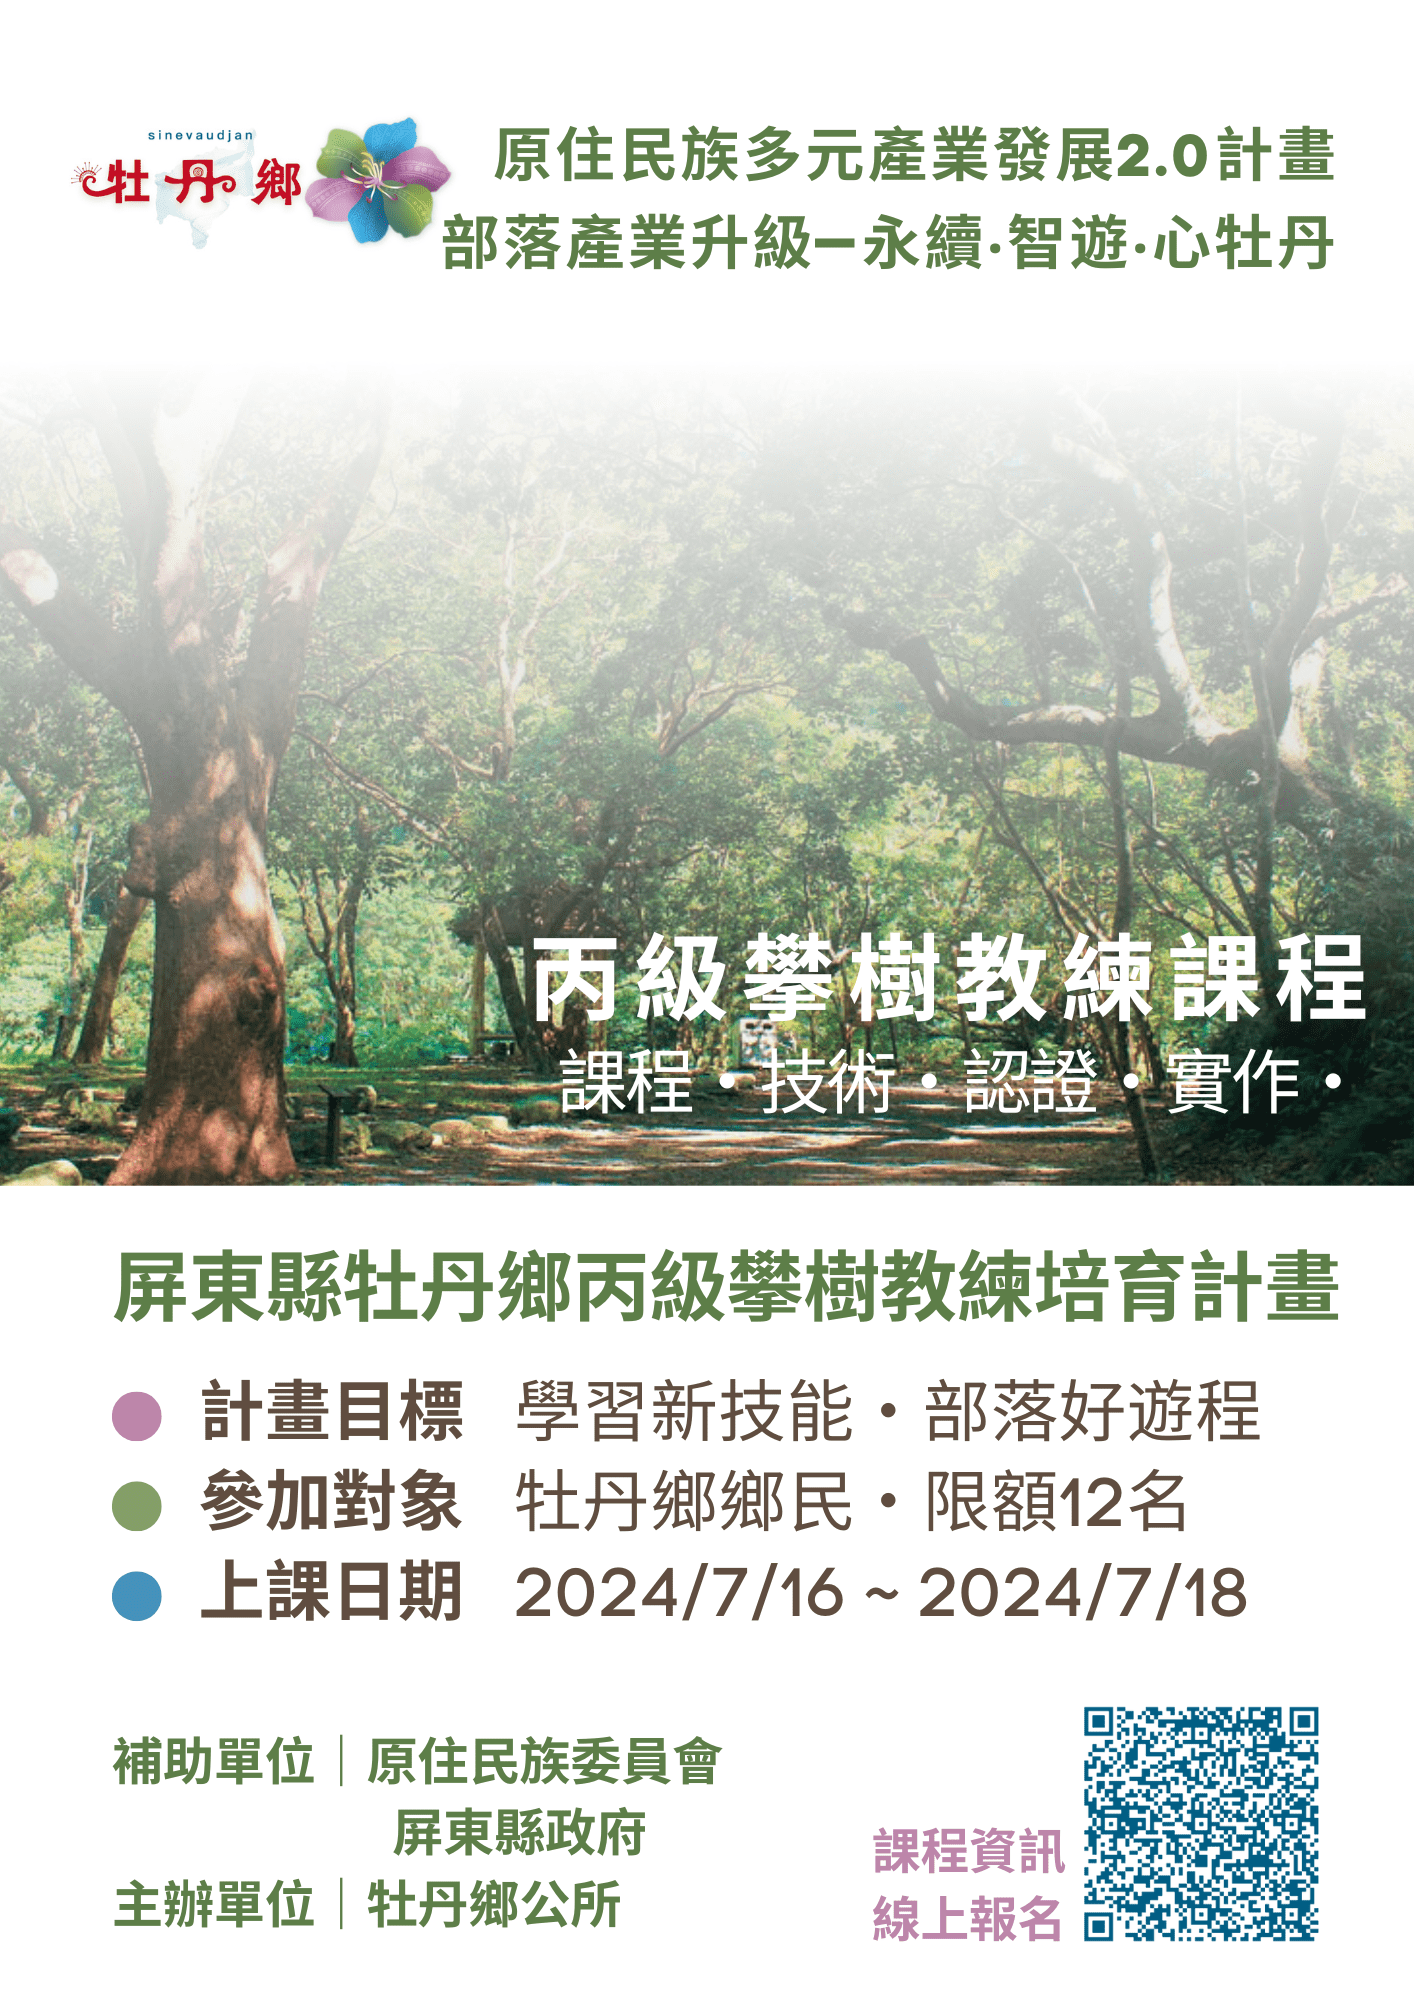 【課程宣傳】牡丹鄉丙級攀樹教練培育計畫 開始報名囉！